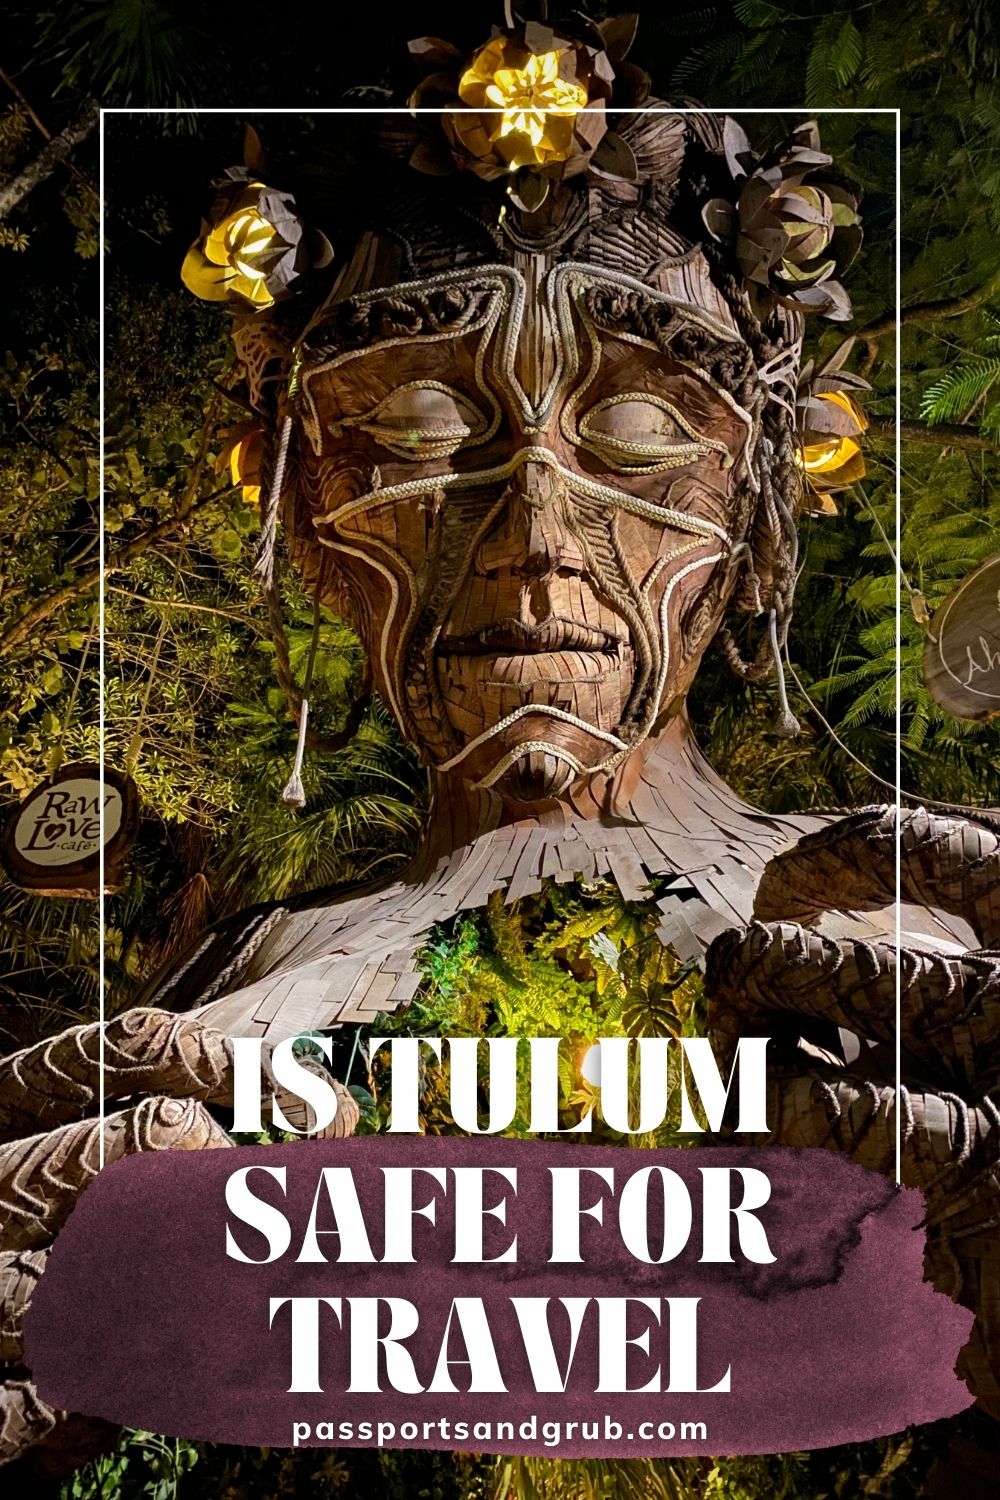 Tulum Safe